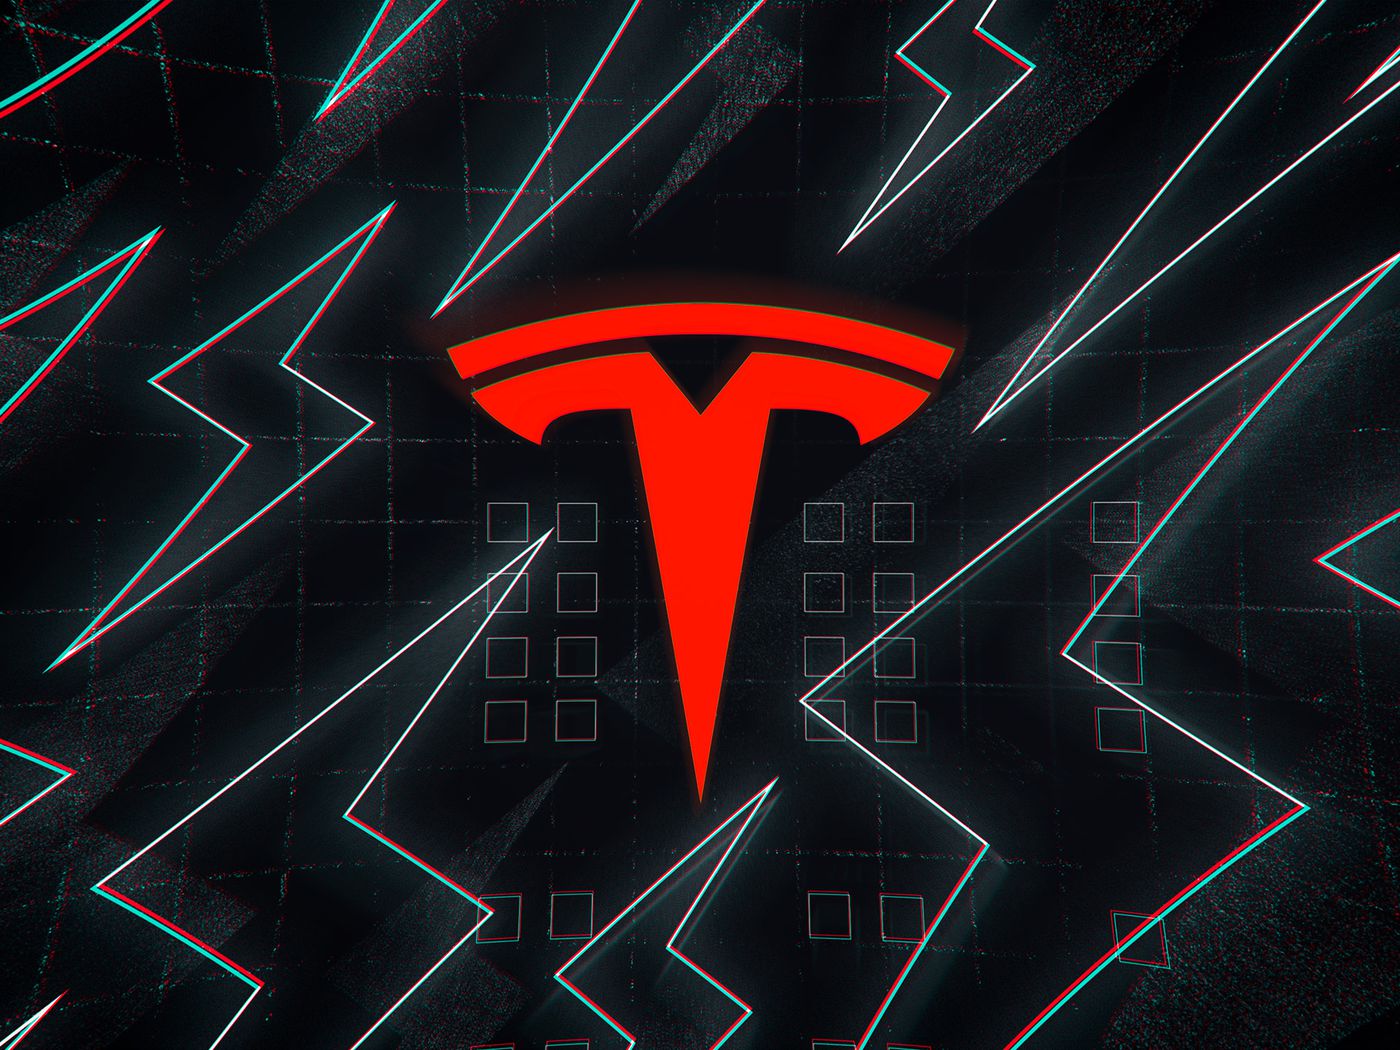 Tesla Bot 4K Wallpapers